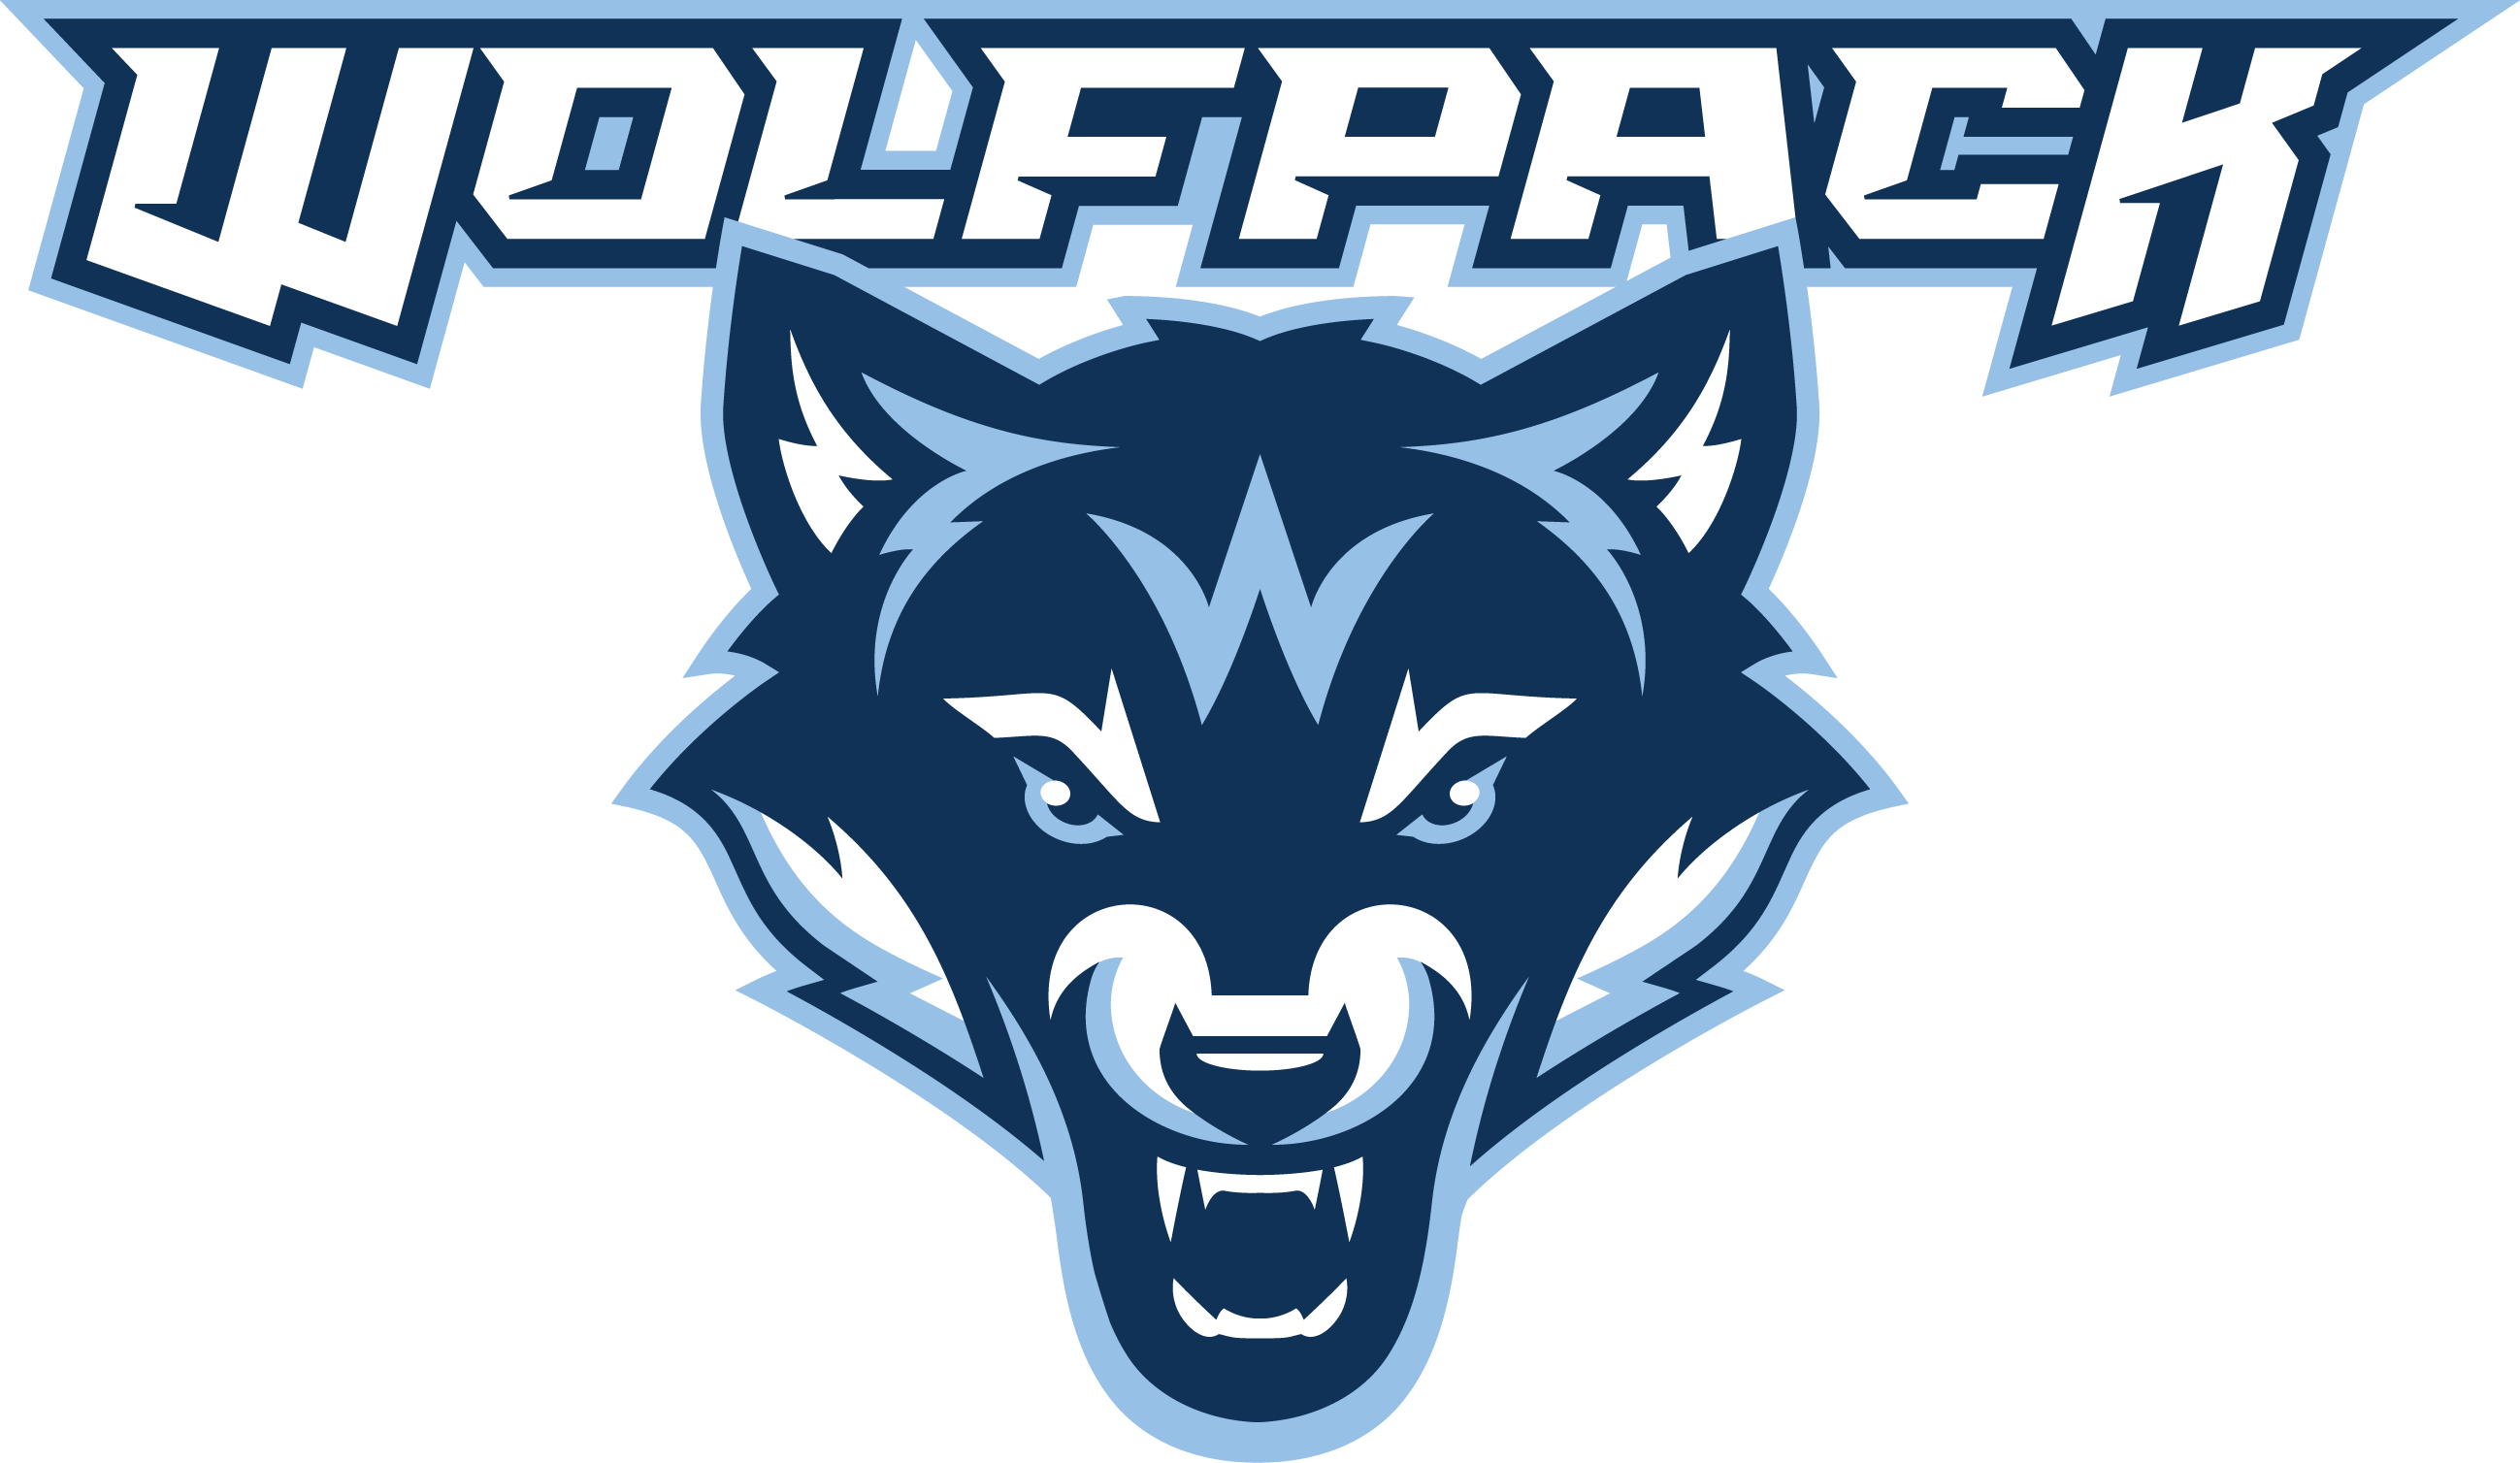 wolfpack logo hawaii high school